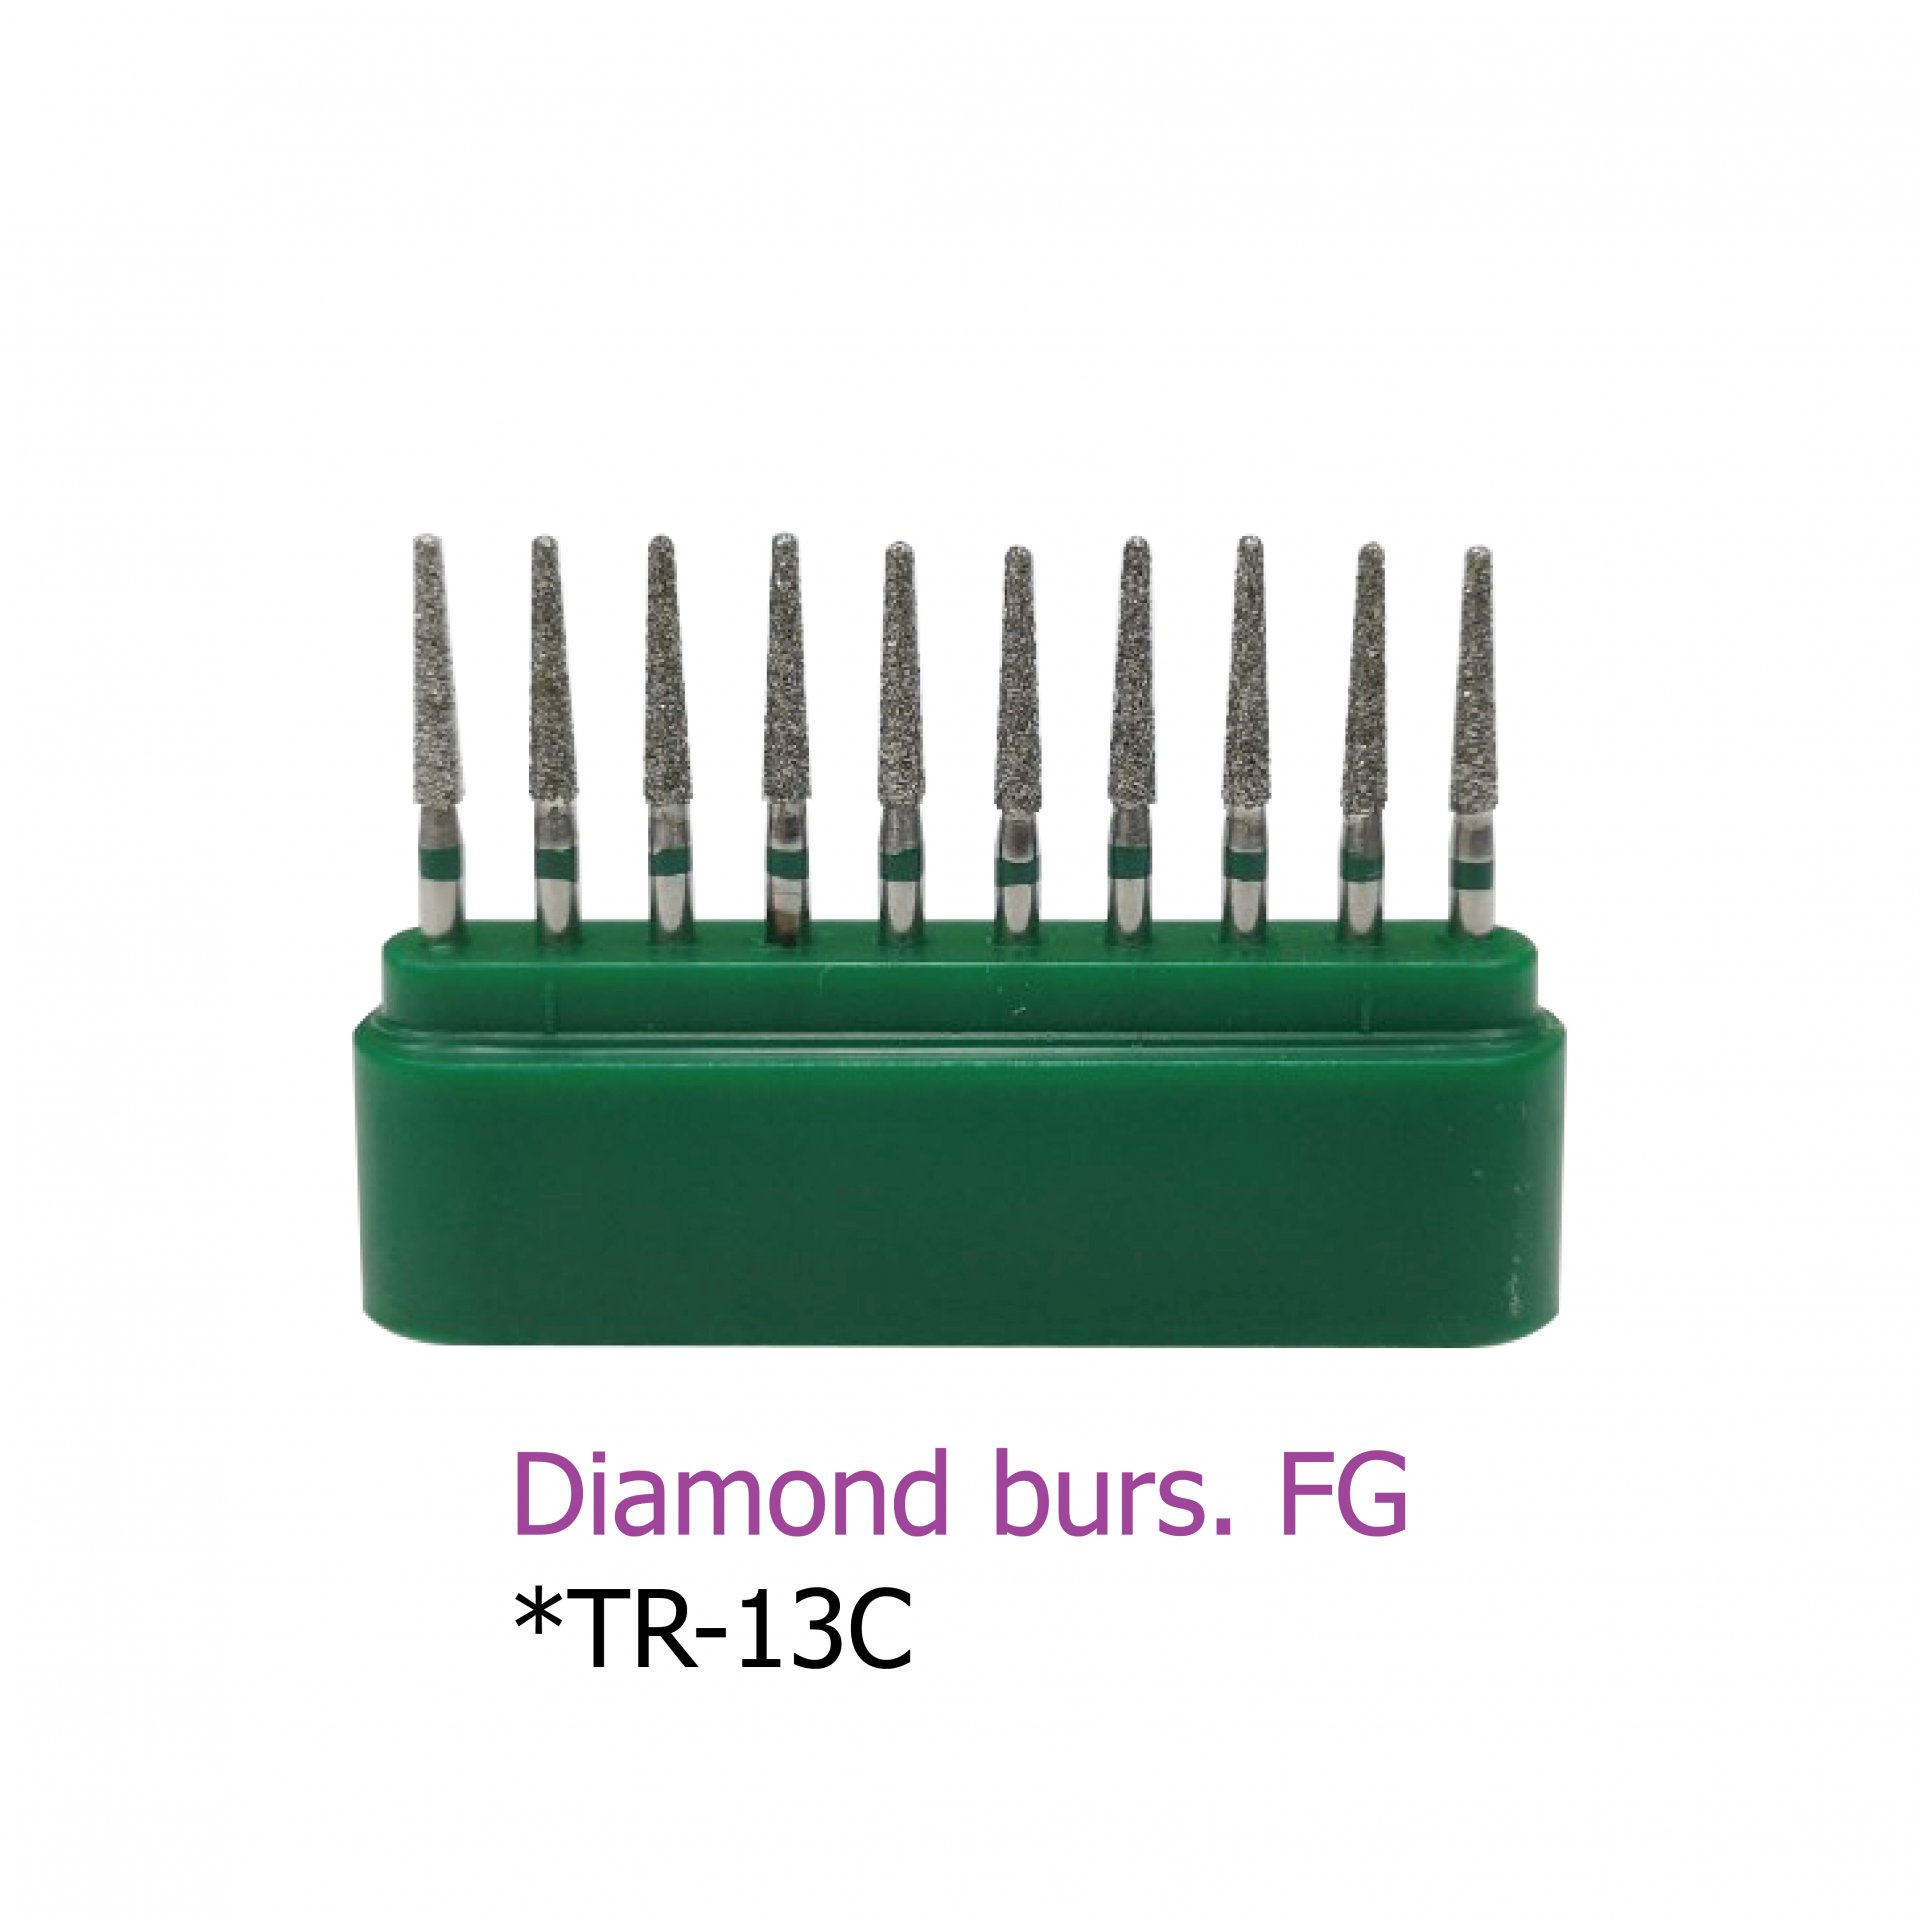 Diamond burs. FG *TR-13C